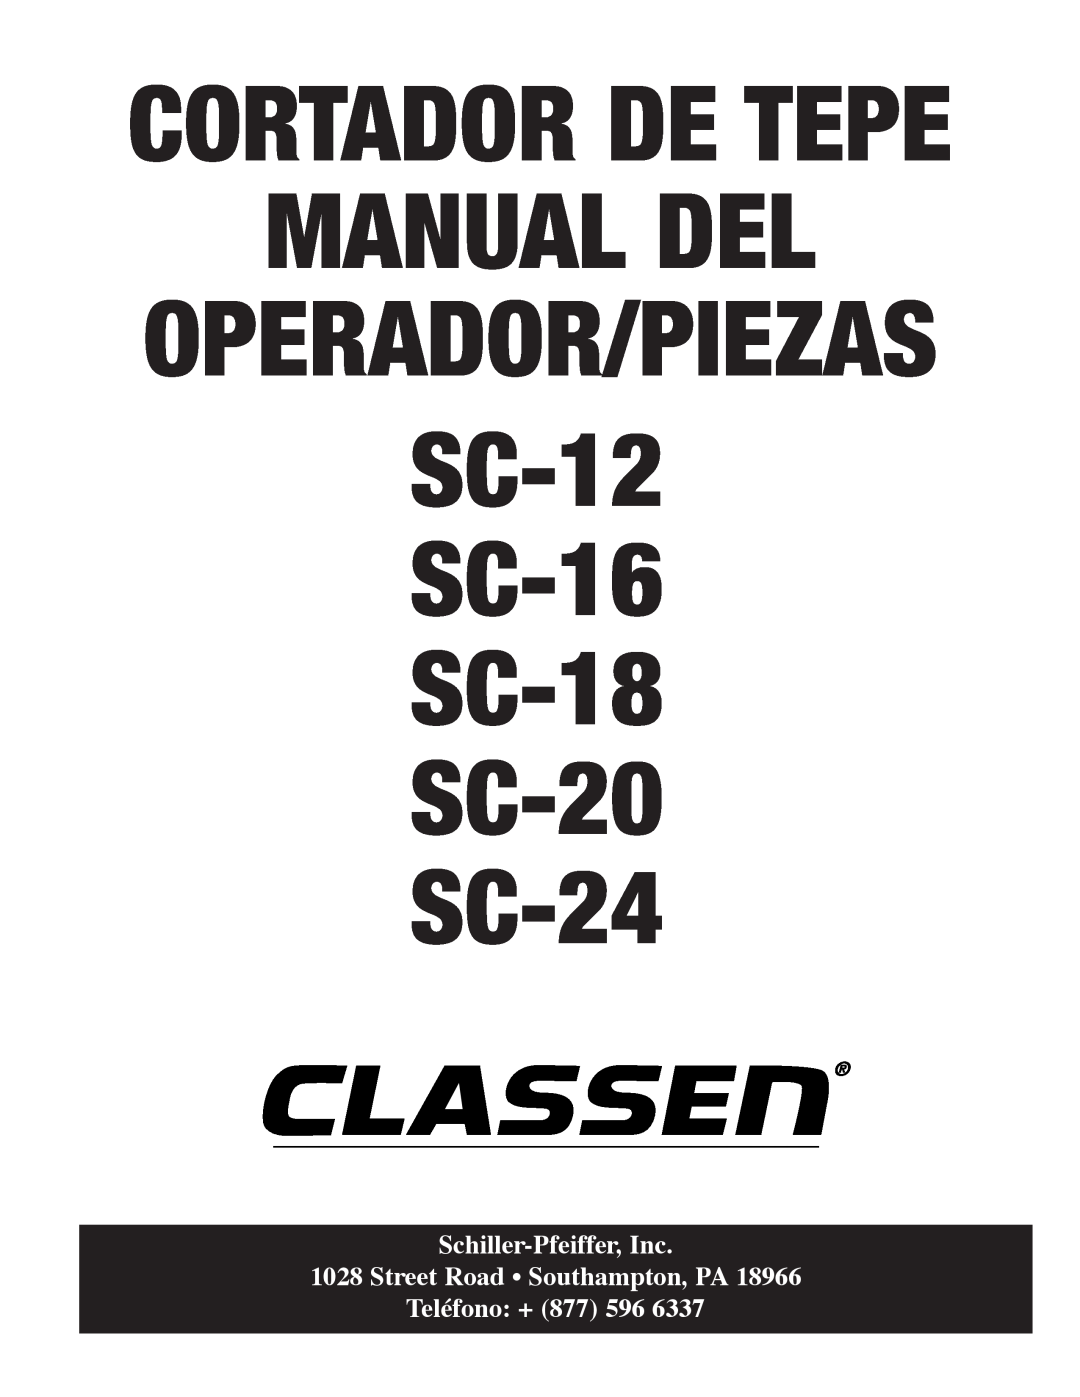 Classen manual Manual Del, Street Road Southampton, PA, Teléfono +, SC-12 SC-16 SC-18 SC-20 SC-24, Operador/Piezas 